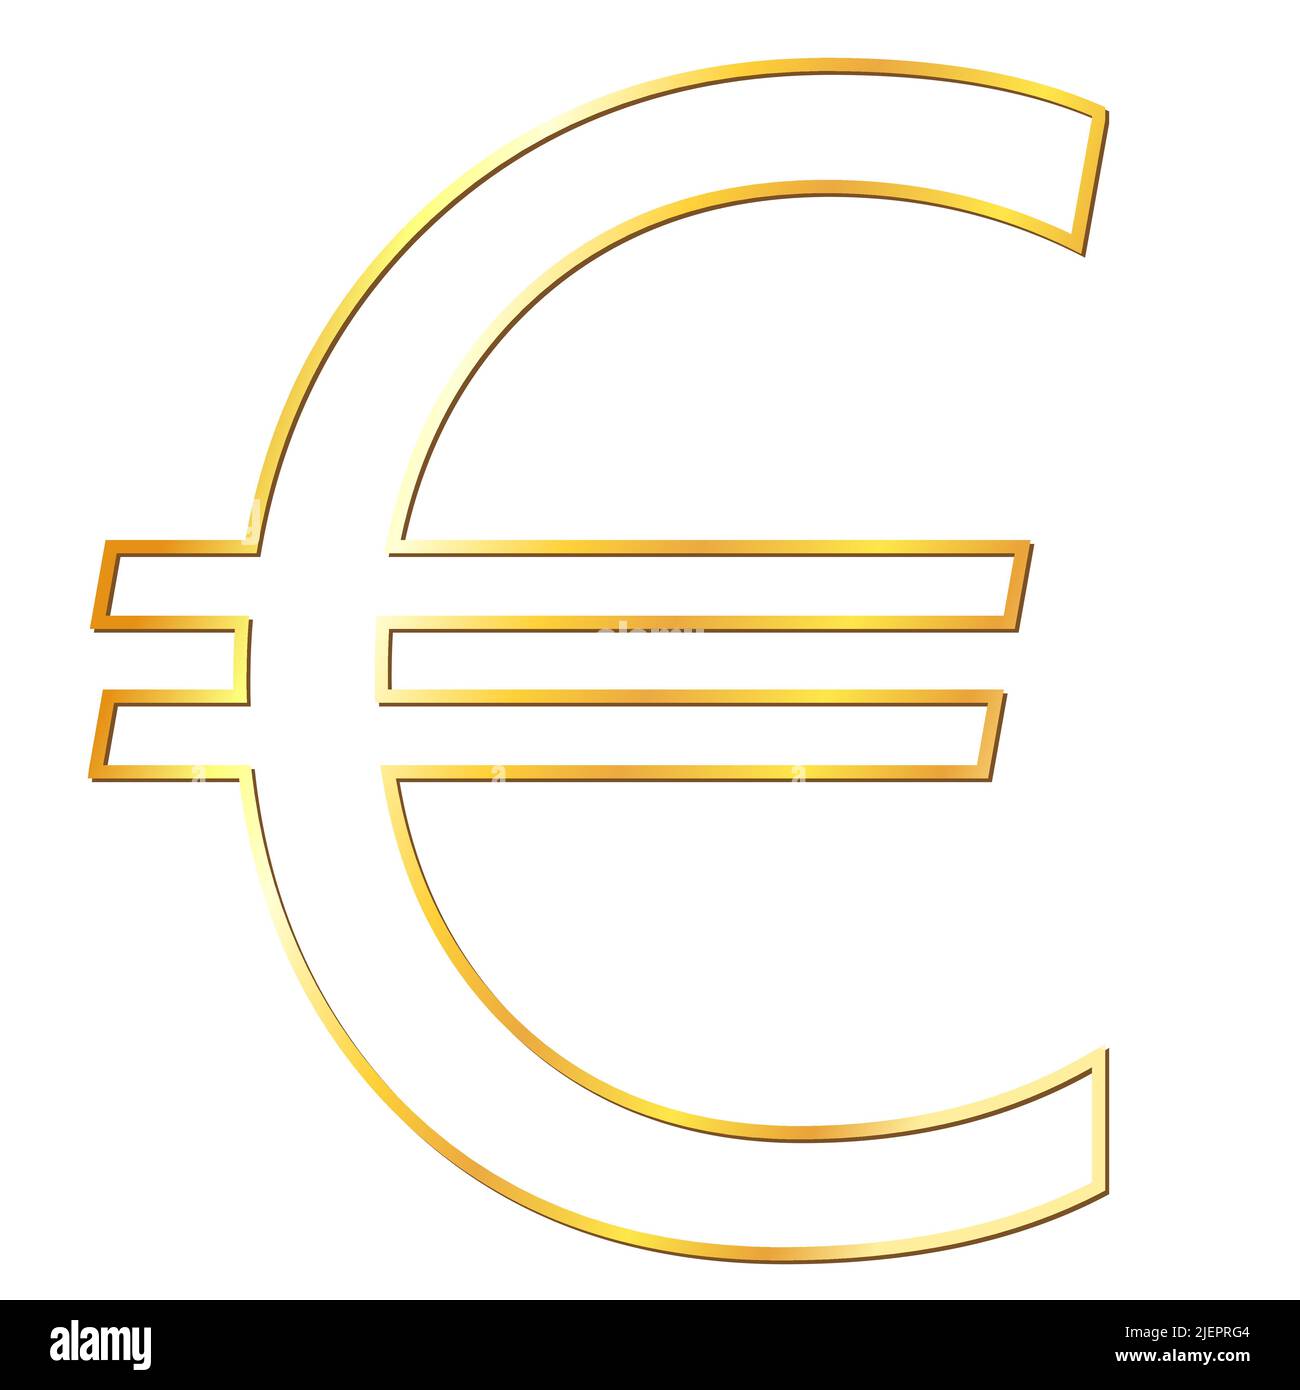 Unione europea Euro euro valuta segno d'oro in vista frontale isolato su sfondo bianco. Moneta della Banca centrale europea. Illustrazione vettoriale Illustrazione Vettoriale